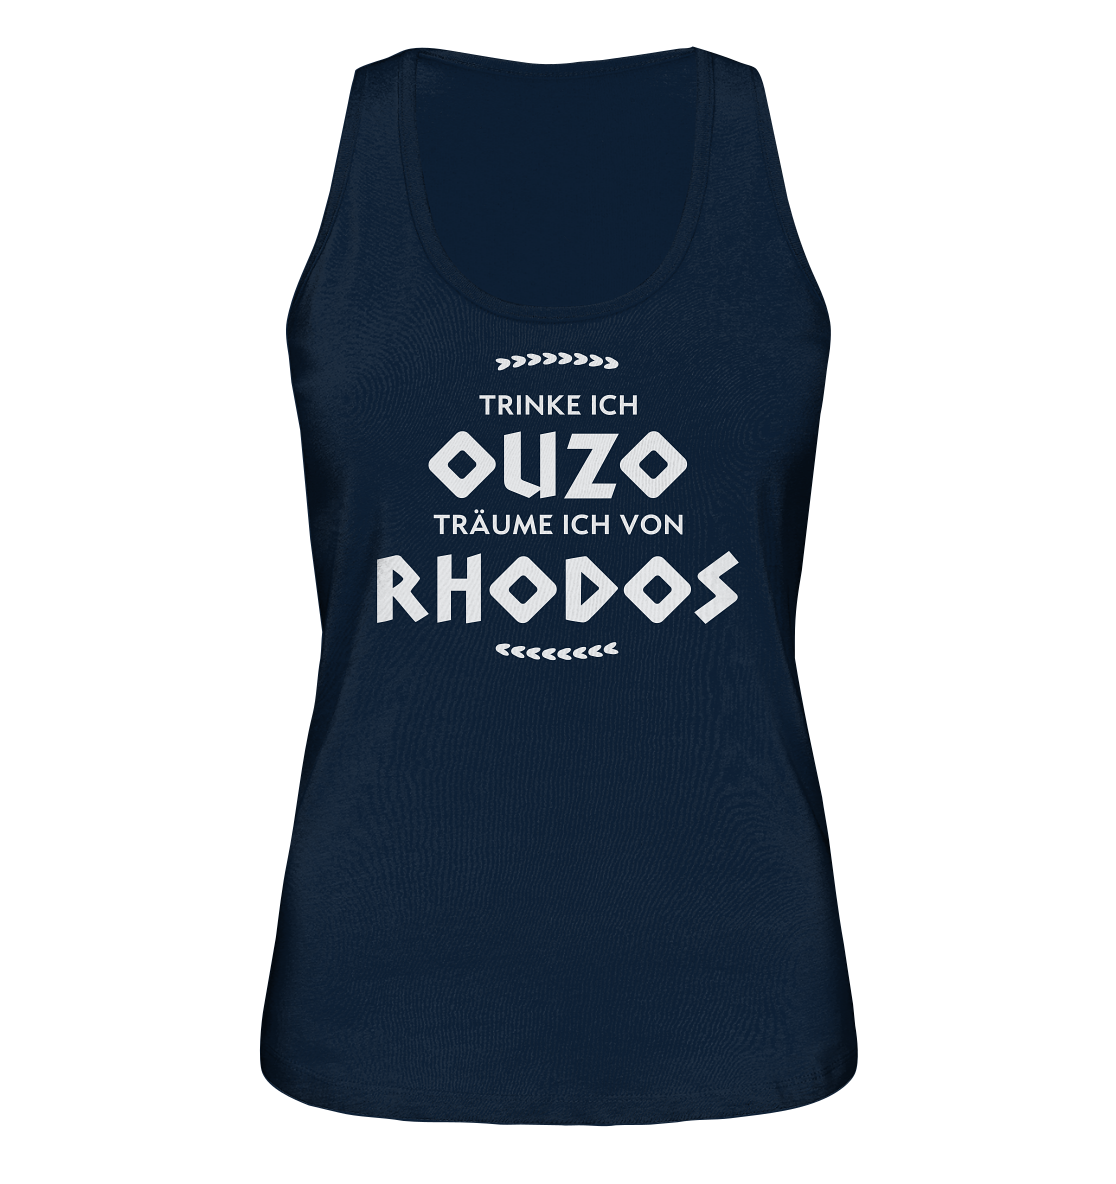 Trinke ich Ouzo träume ich von Rhodos - Ladies Organic Tank-Top